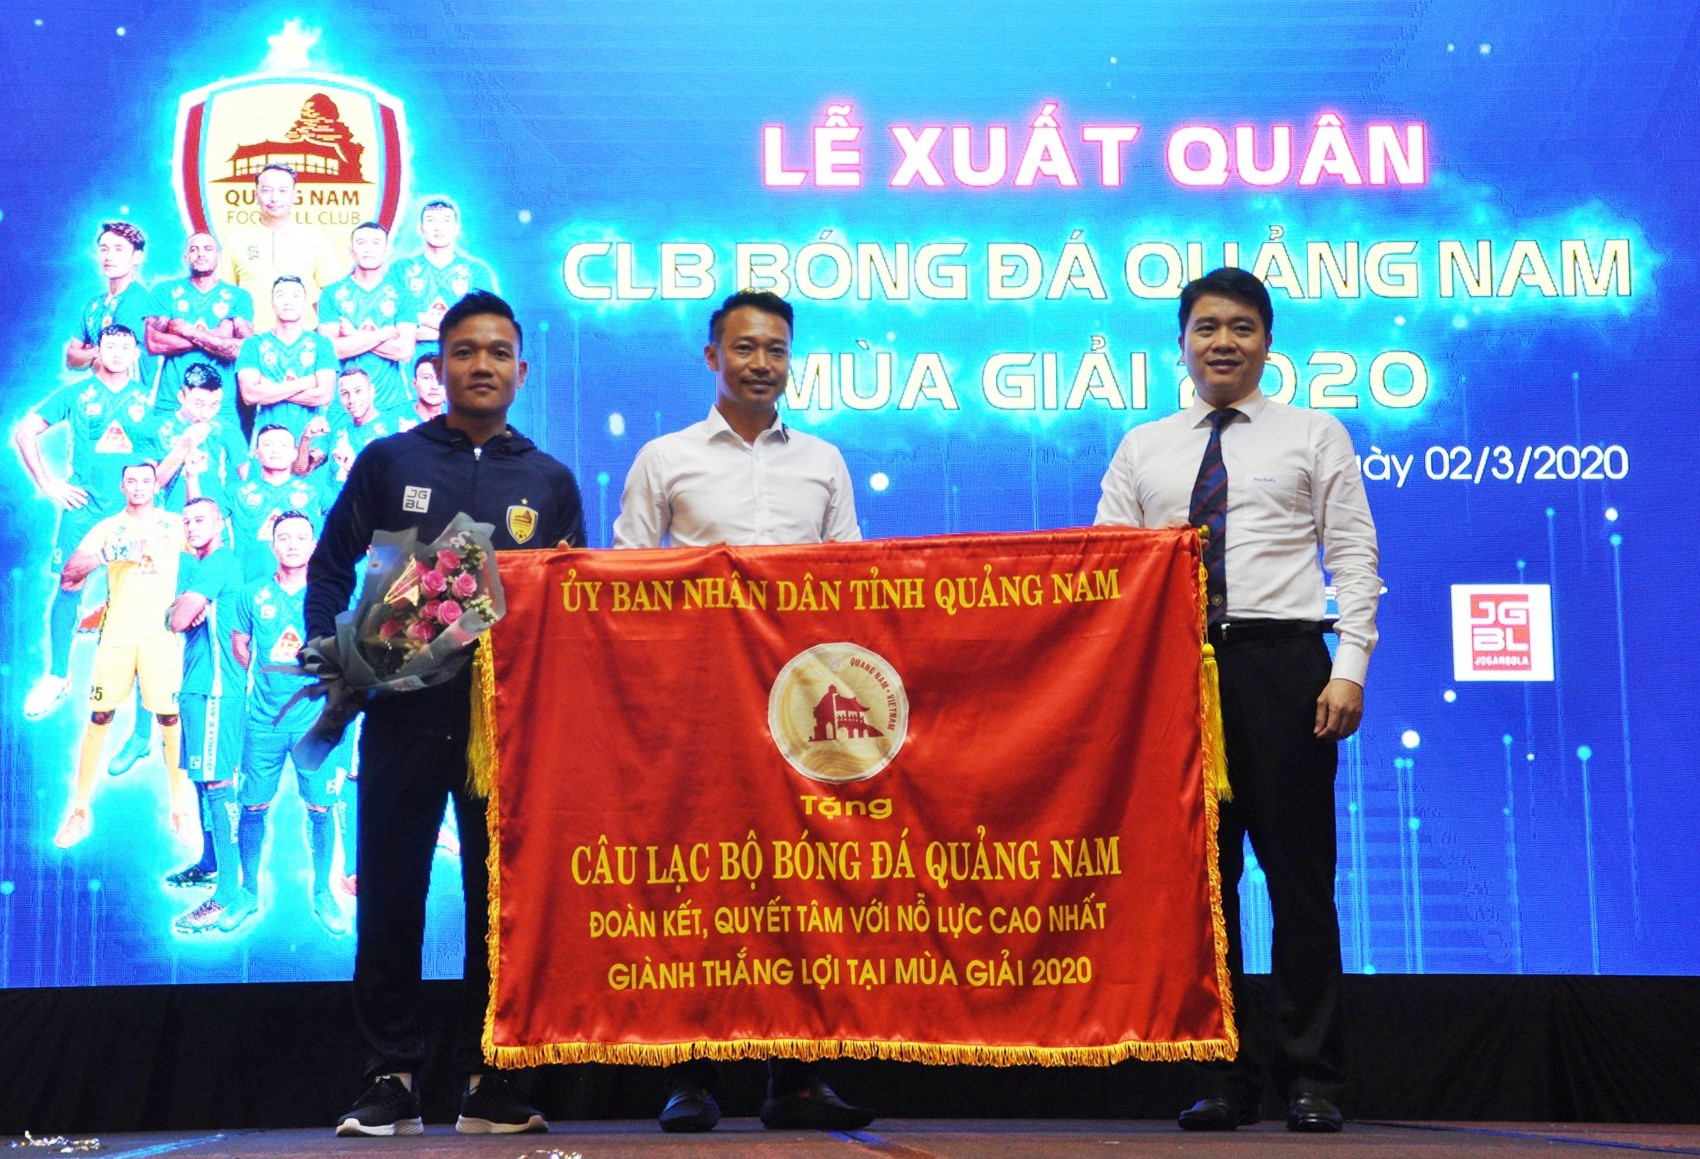 Phó Chủ tịch UBND tỉnh Trần Văn Tân tặng cờ xuất quân của UBND tỉnh cho đại diện đội bóng với mong muốn mùa giải 2020 đội Quảng Nam thi đấu tốt. Ảnh: A.S